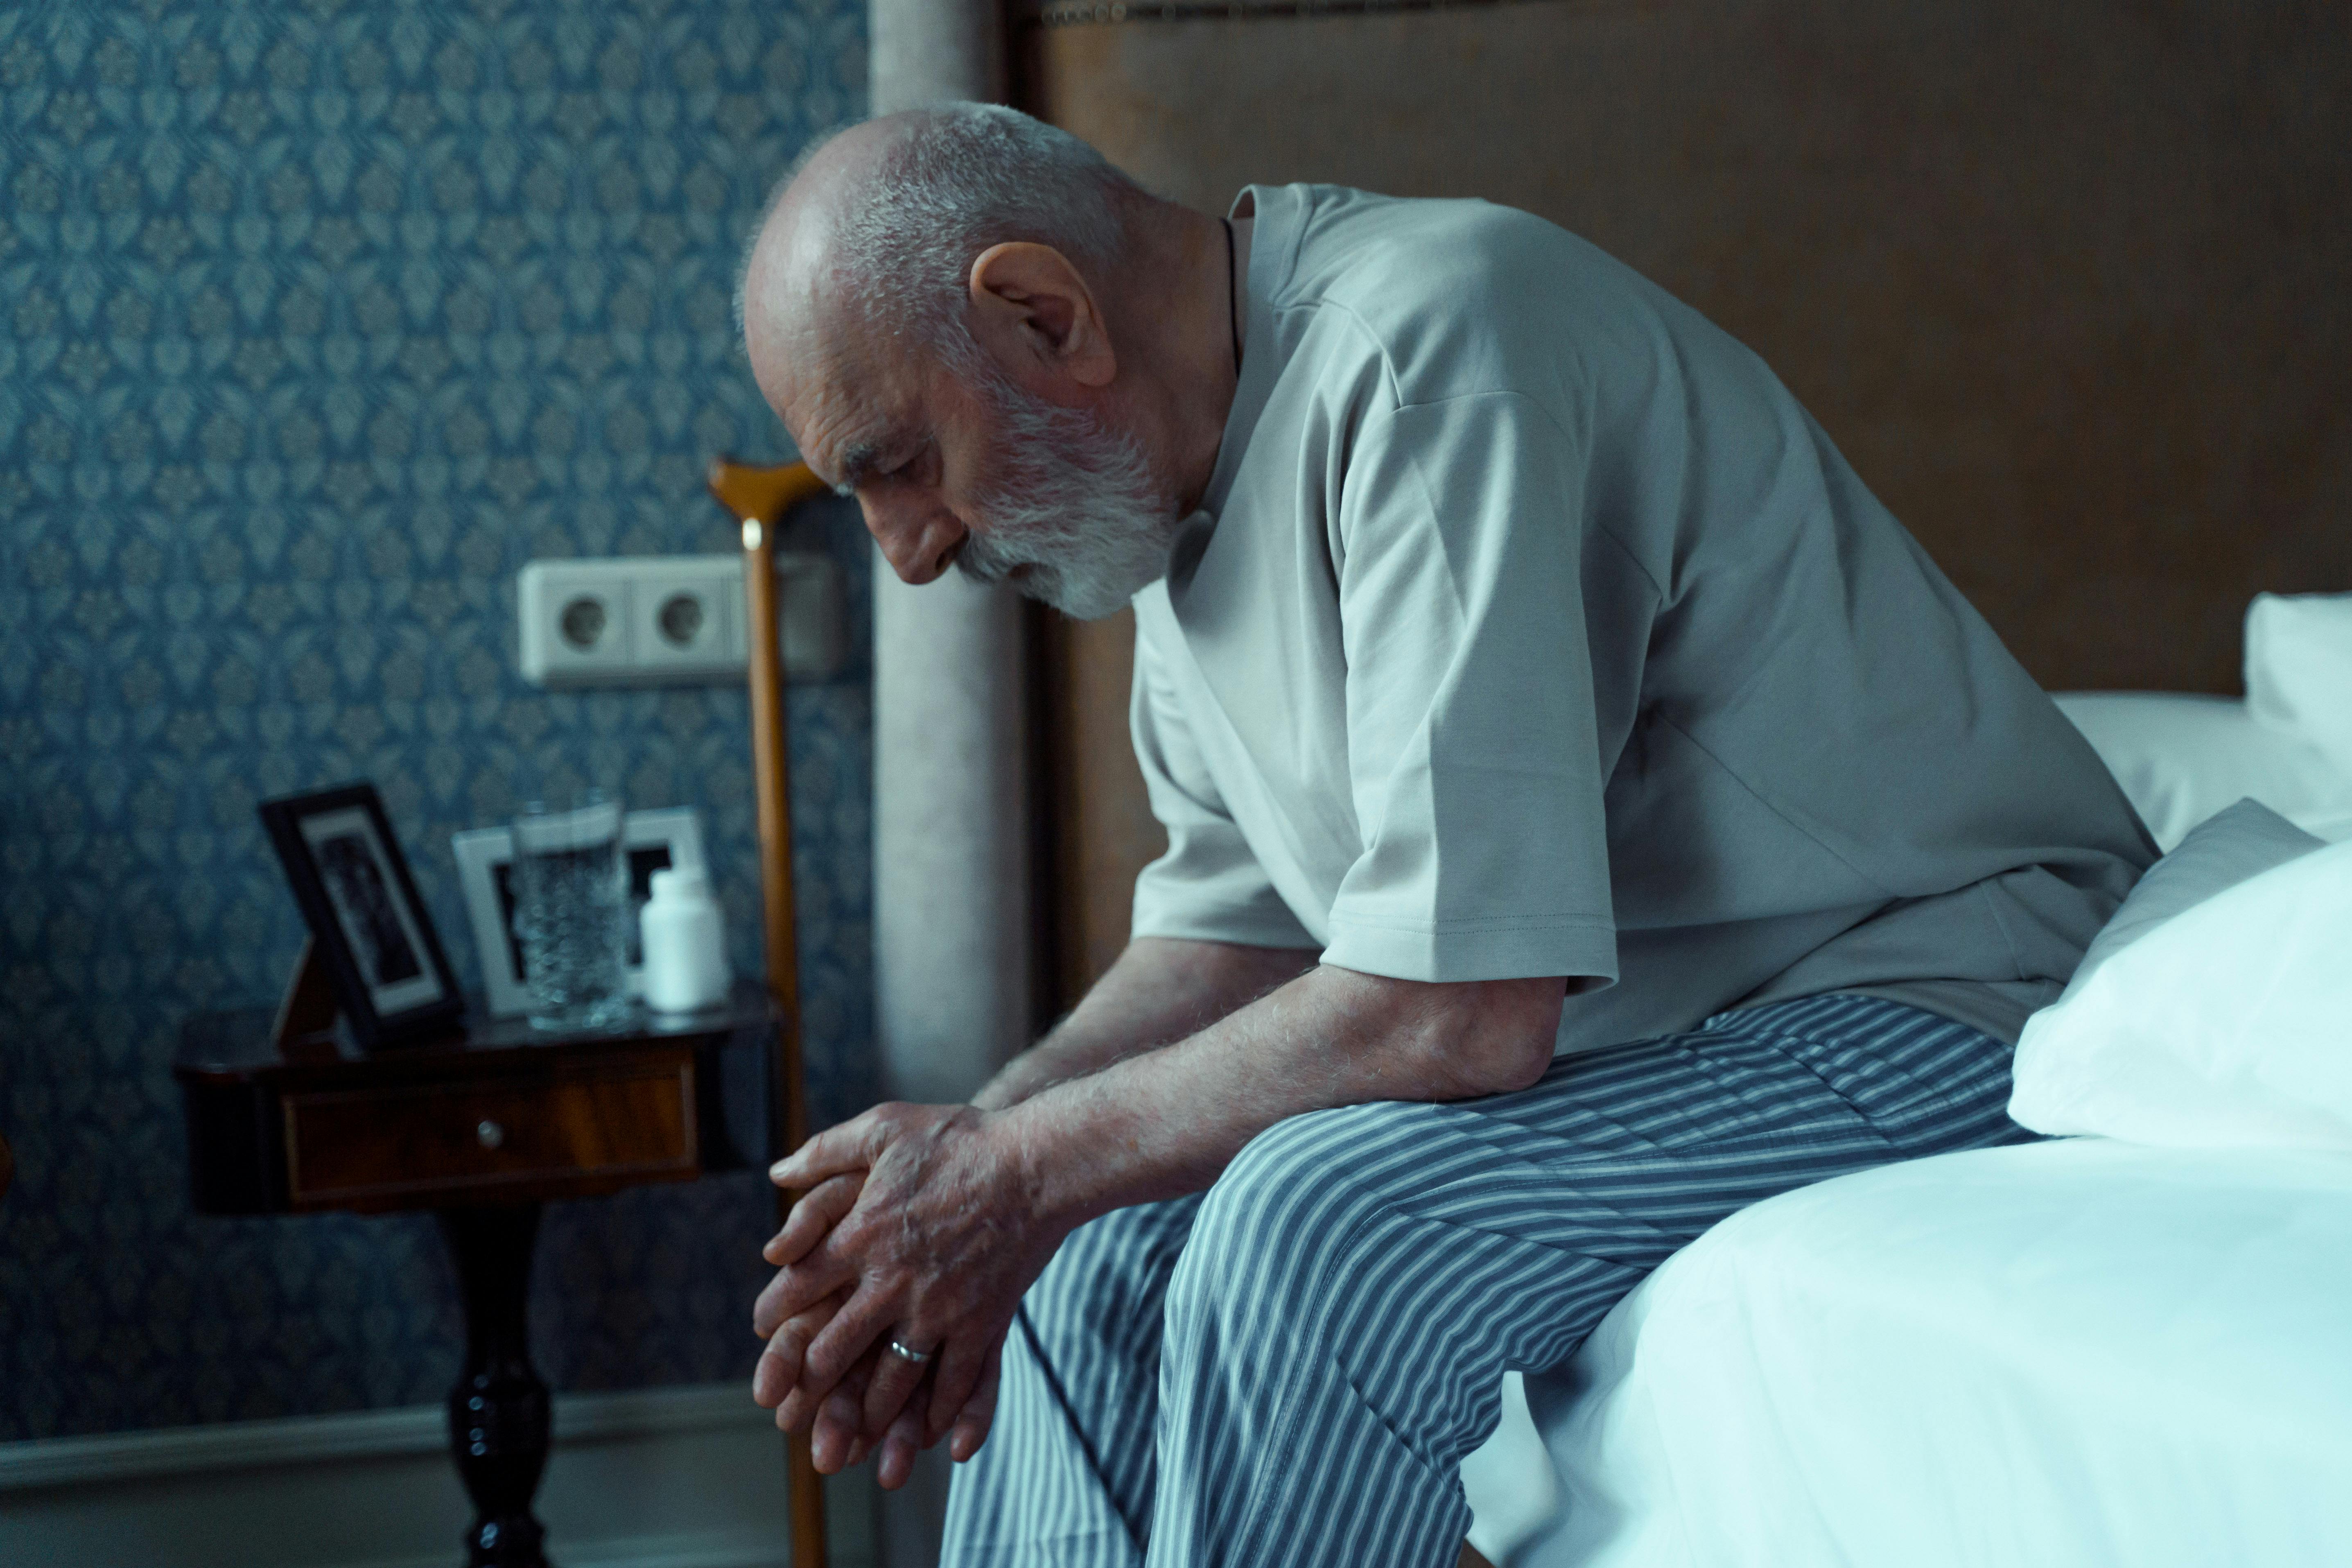 Un homme à l'air malade est assis sur un lit | Source : Pexels